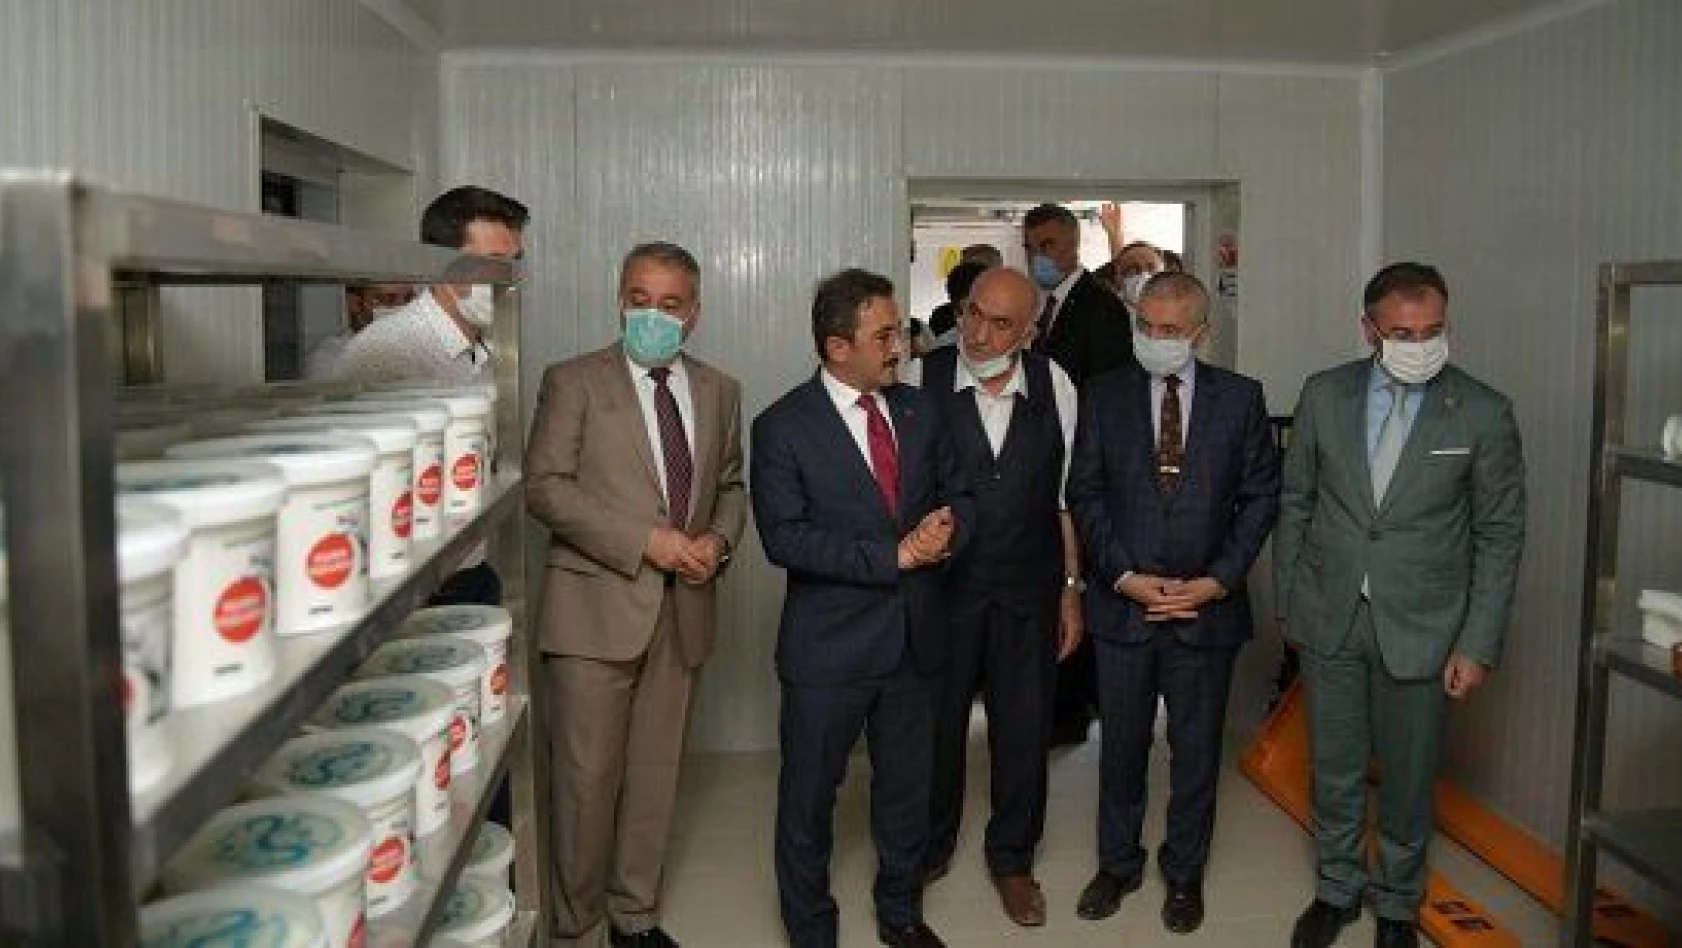 Kayseri'de manda sütü işleme tesisi açıldı